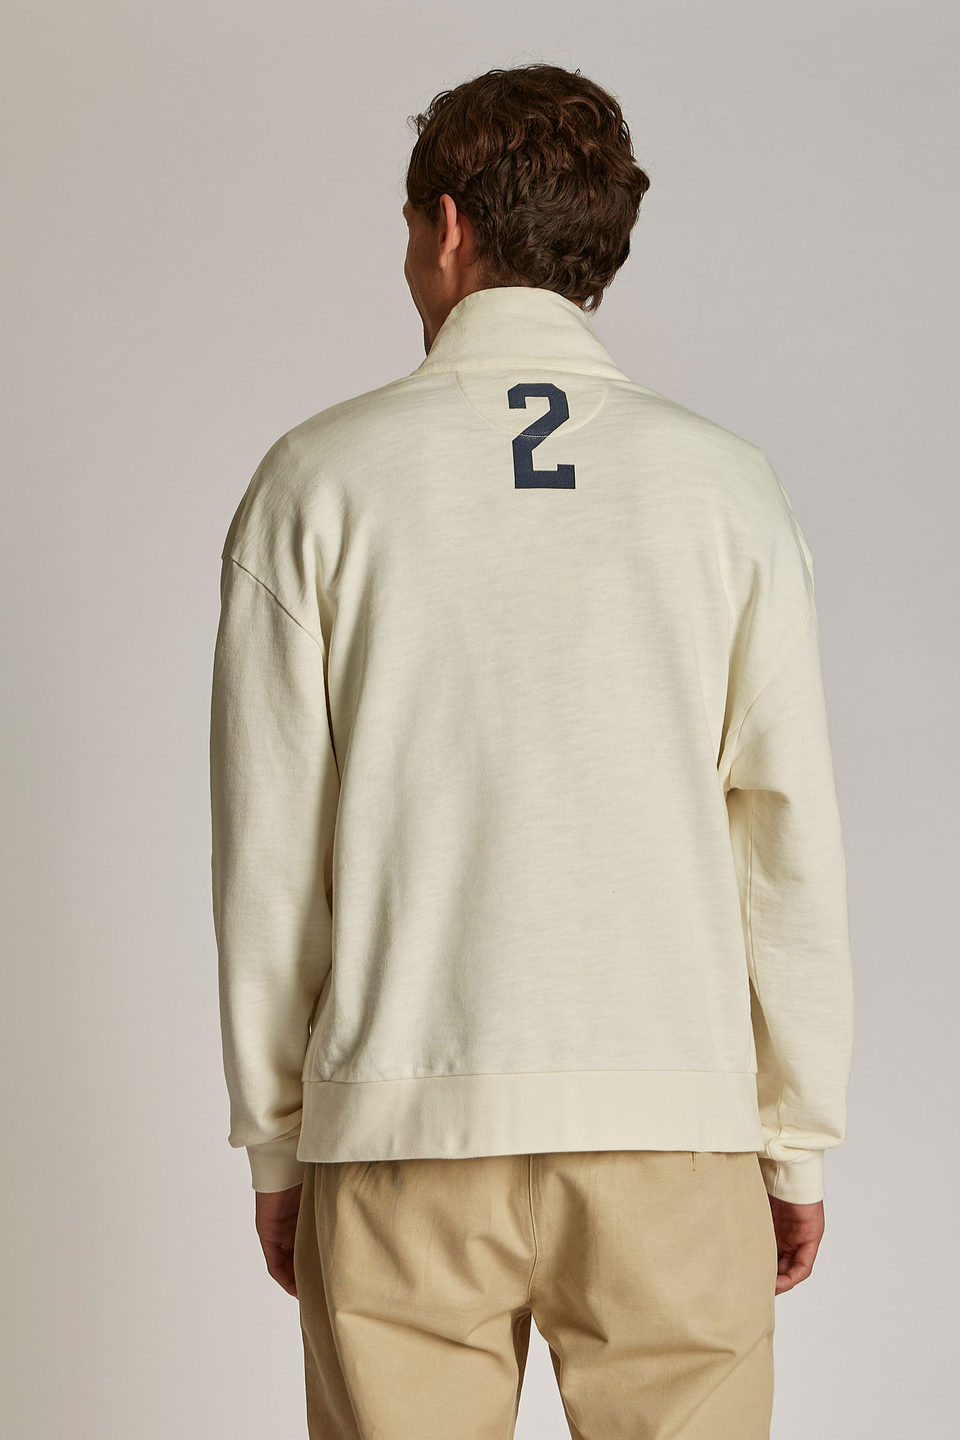 Sweat-shirt homme 100% coton, avec col zippé et coupe oversize - La Martina - Official Online Shop